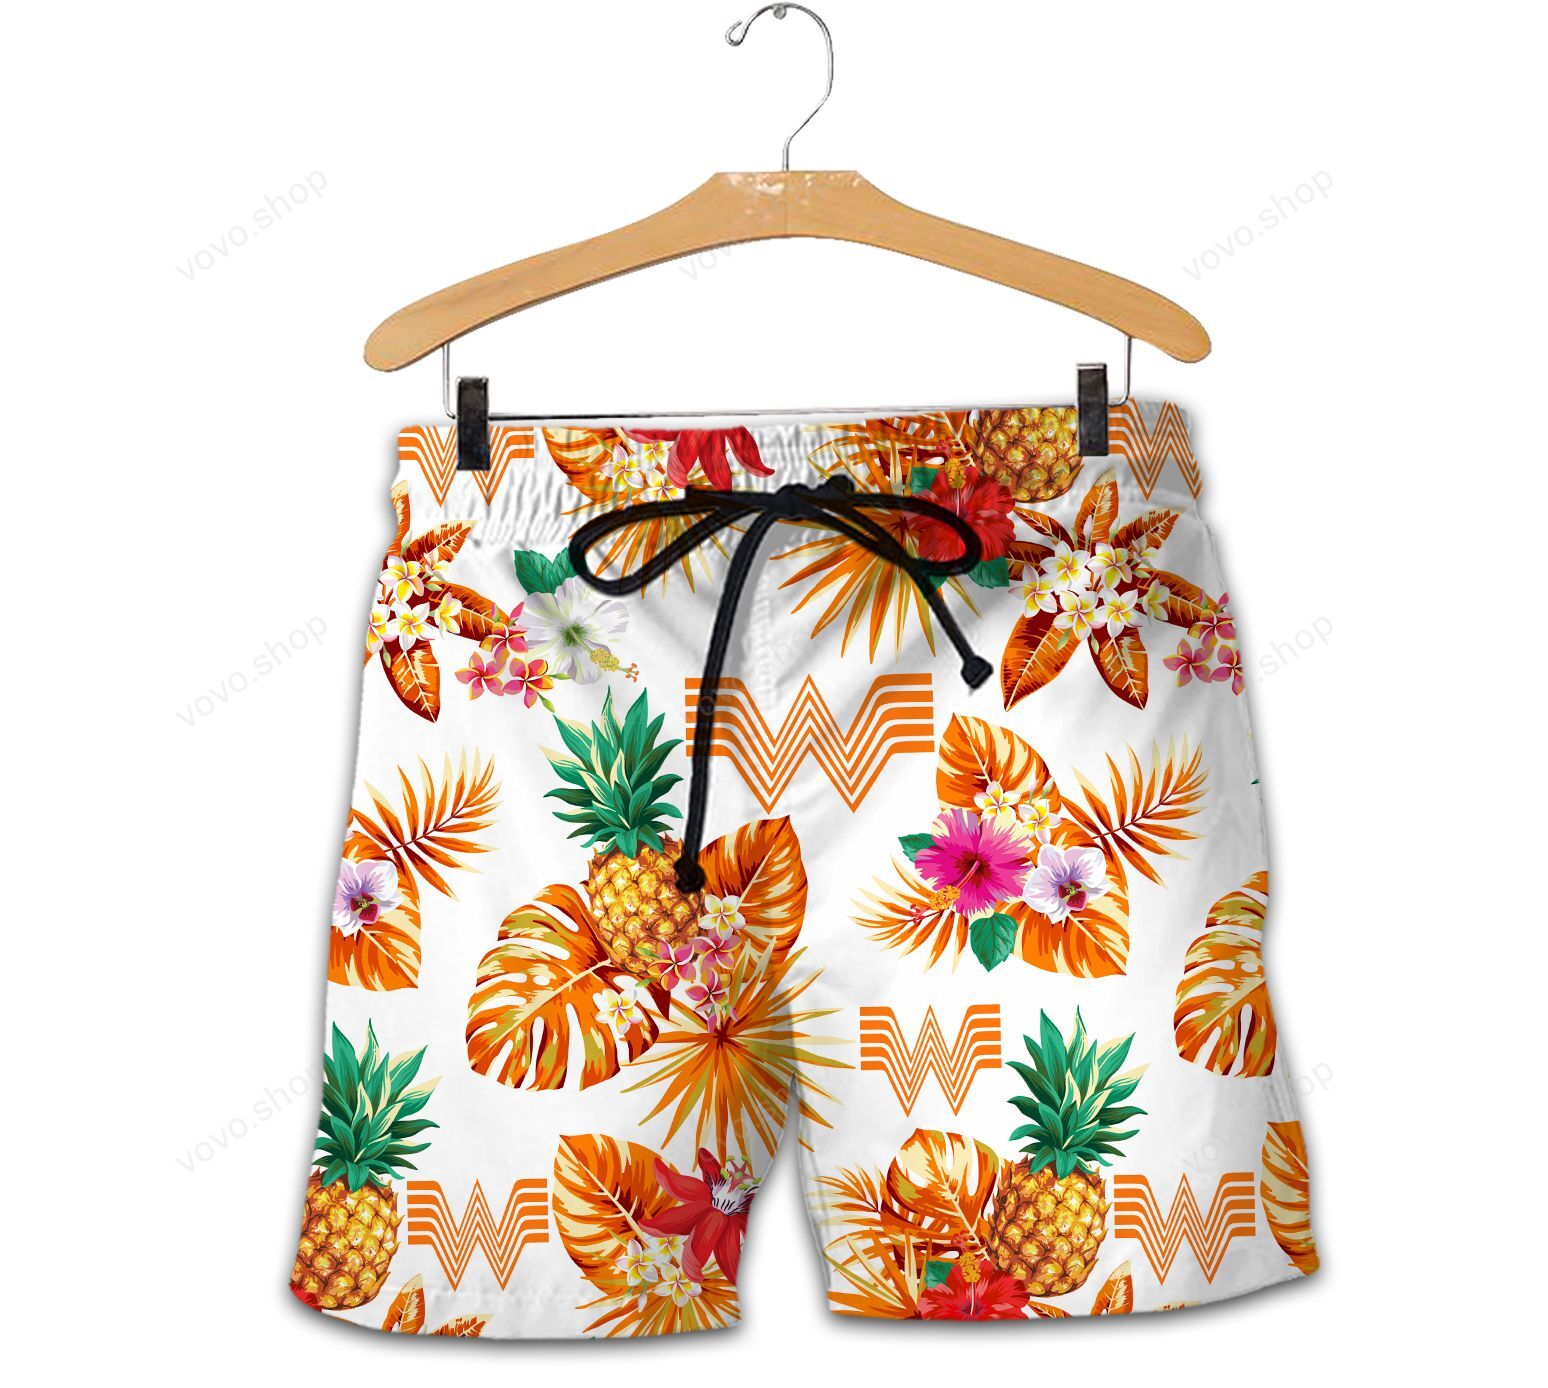 Whataburger Hawaiian shirt and short 1